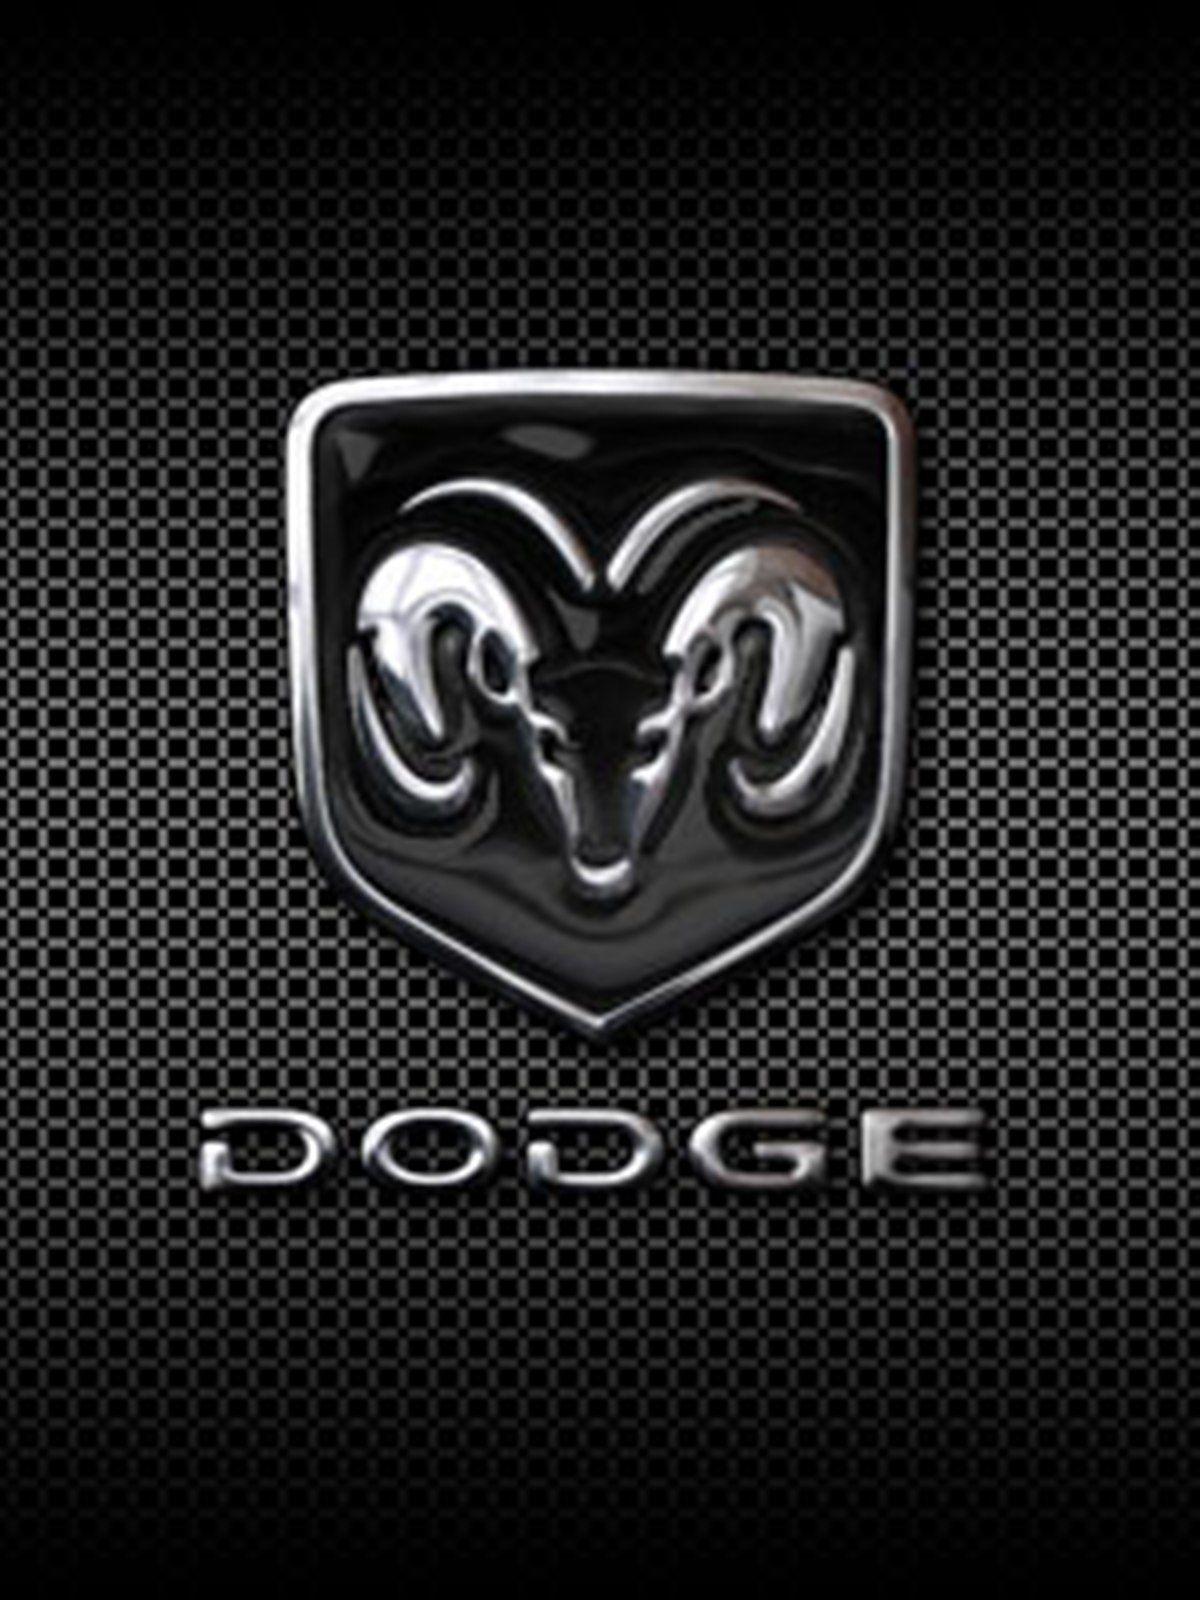 Dodge Logo - dodge logo wallpaperΩDGΣ. Dodge, Dodge logo, Cars